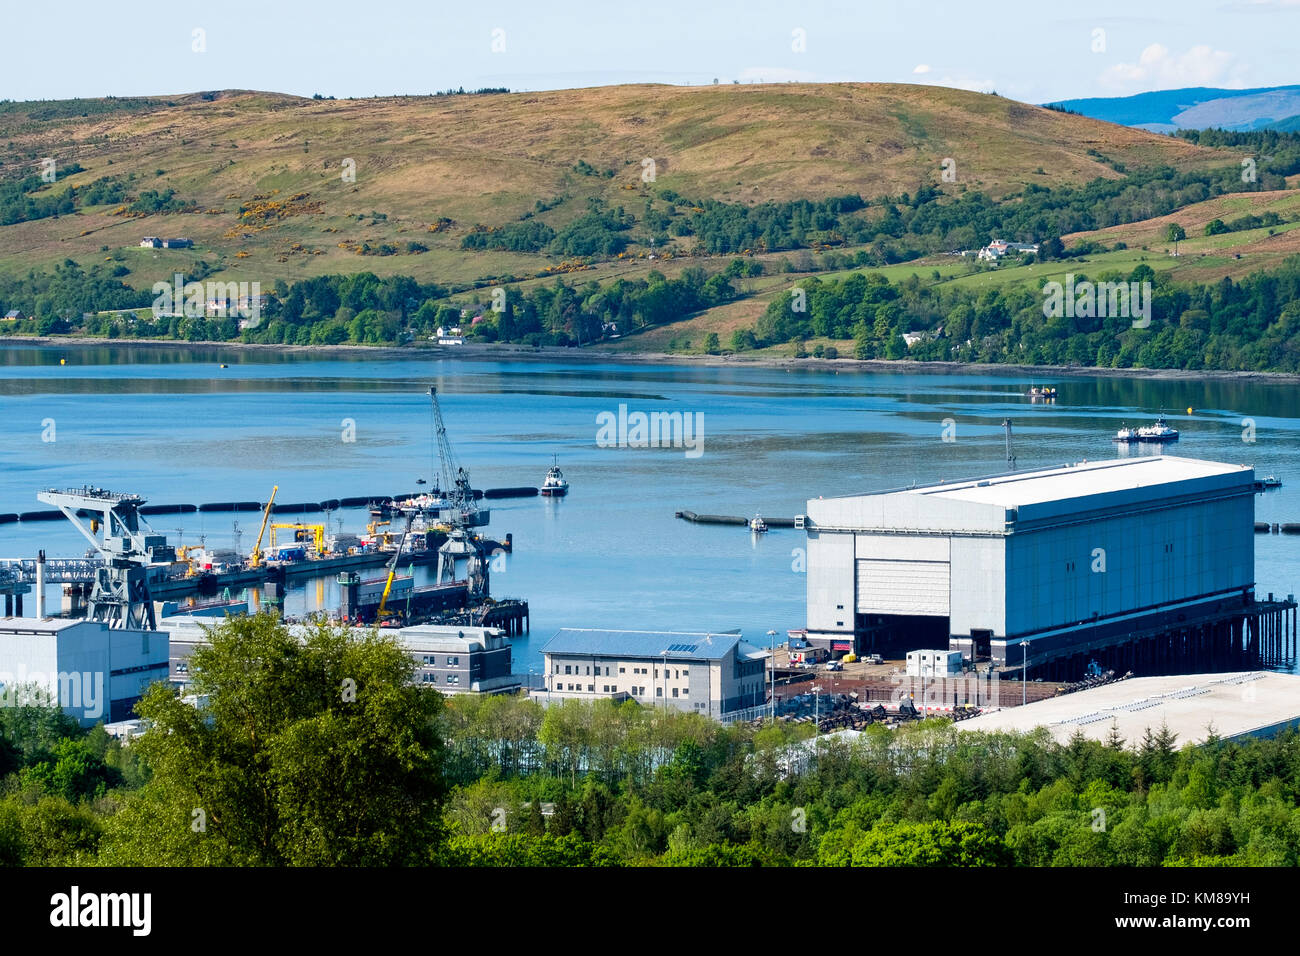 La base de sous-marins nucléaires de Faslane sur le Gare Loch à Argyll and Bute, Ecosse, Royaume-Uni Banque D'Images